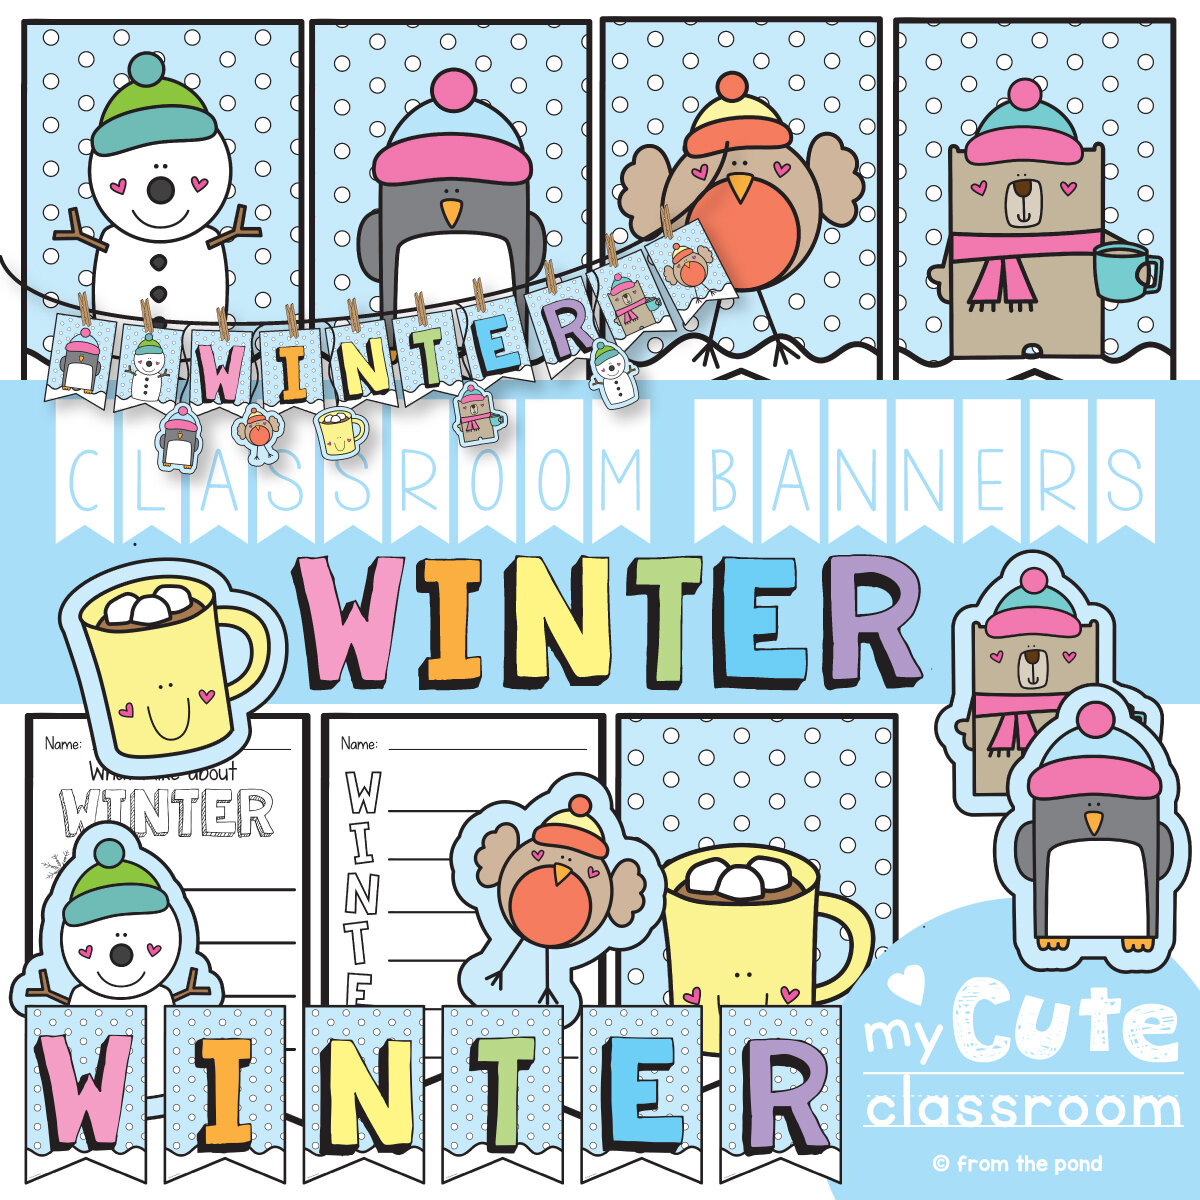 Winter Classroom Banner